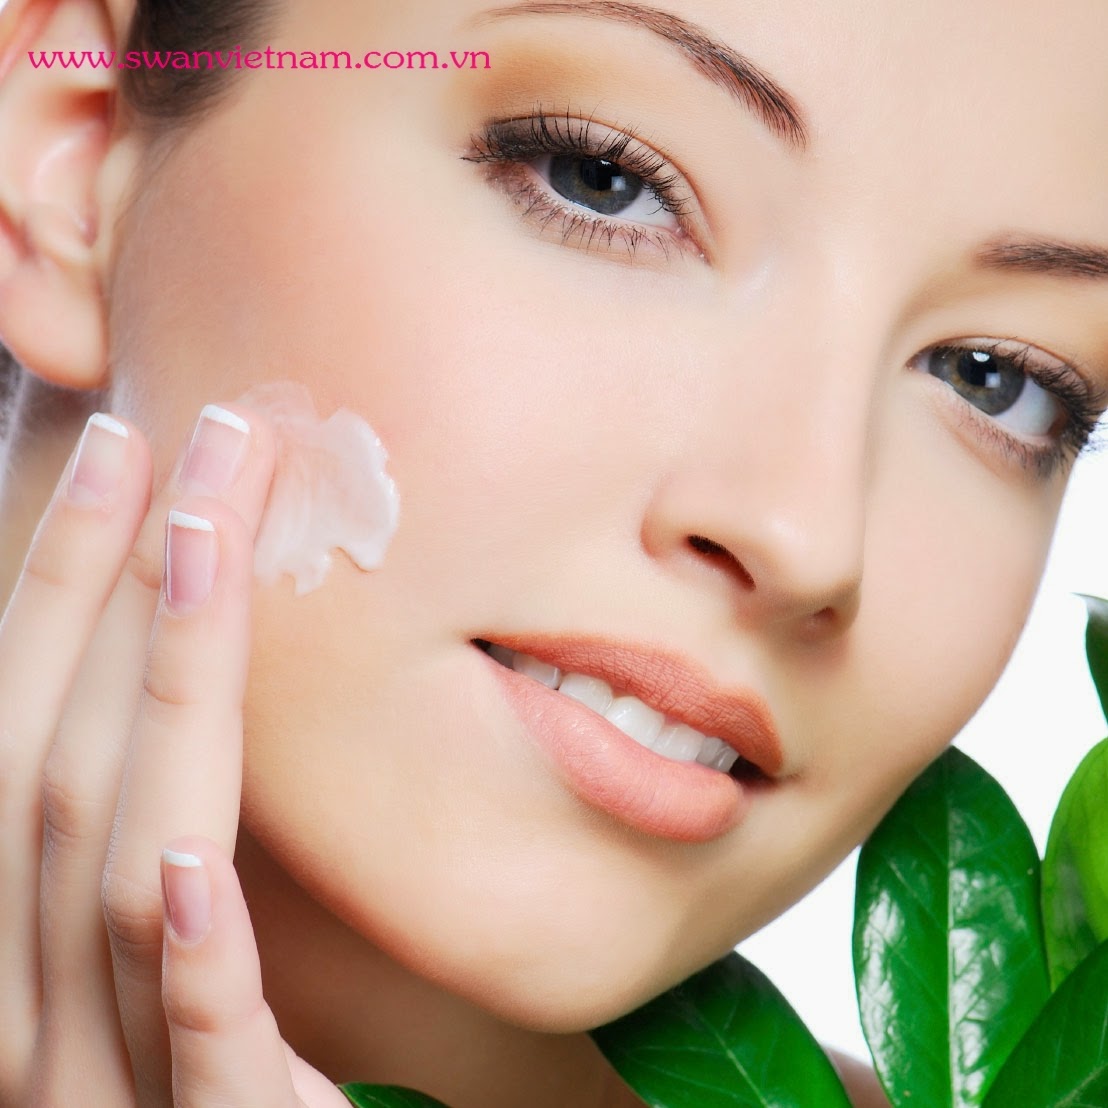 Những cách thức hiệu quả giúp ngăn ngừa nám da cho làn da đẹp và gợi cảm Cach%2Btri%2Bnam%2Bda%2B(1)